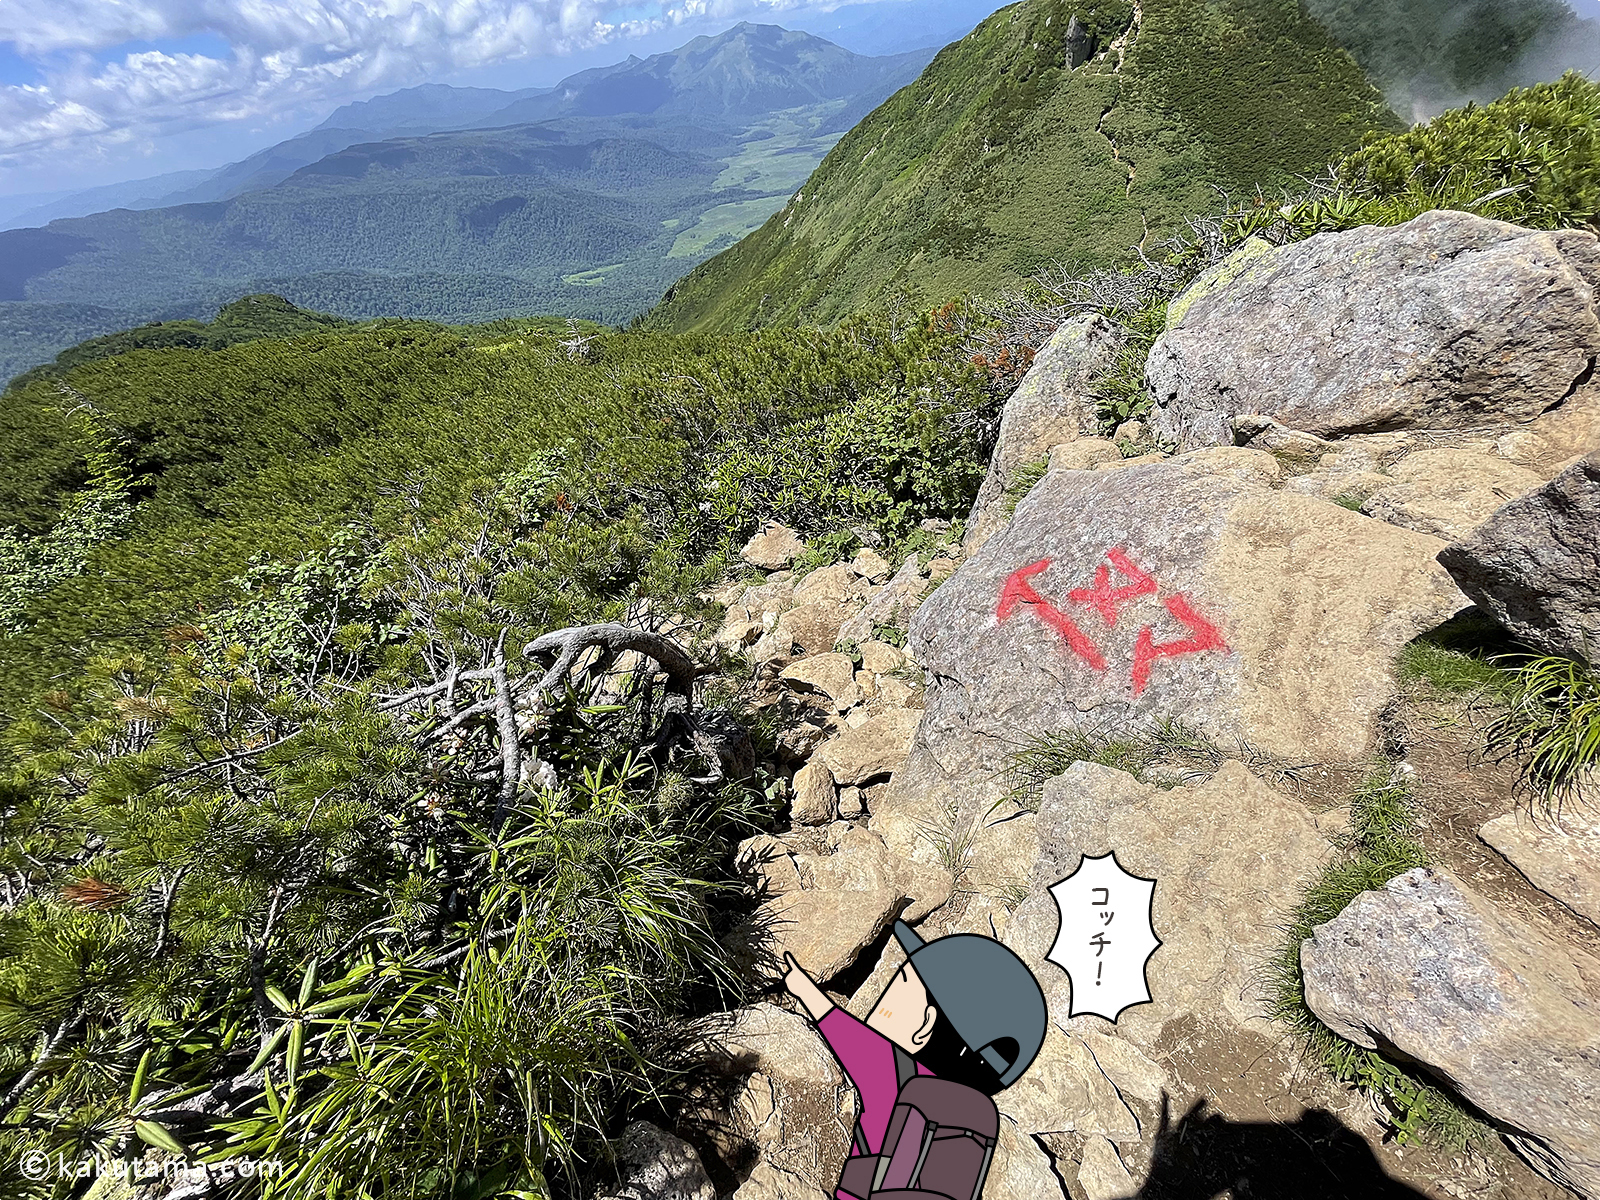 ヌマと書いてある方向へ下山を開始する写真と登山者のイラスト